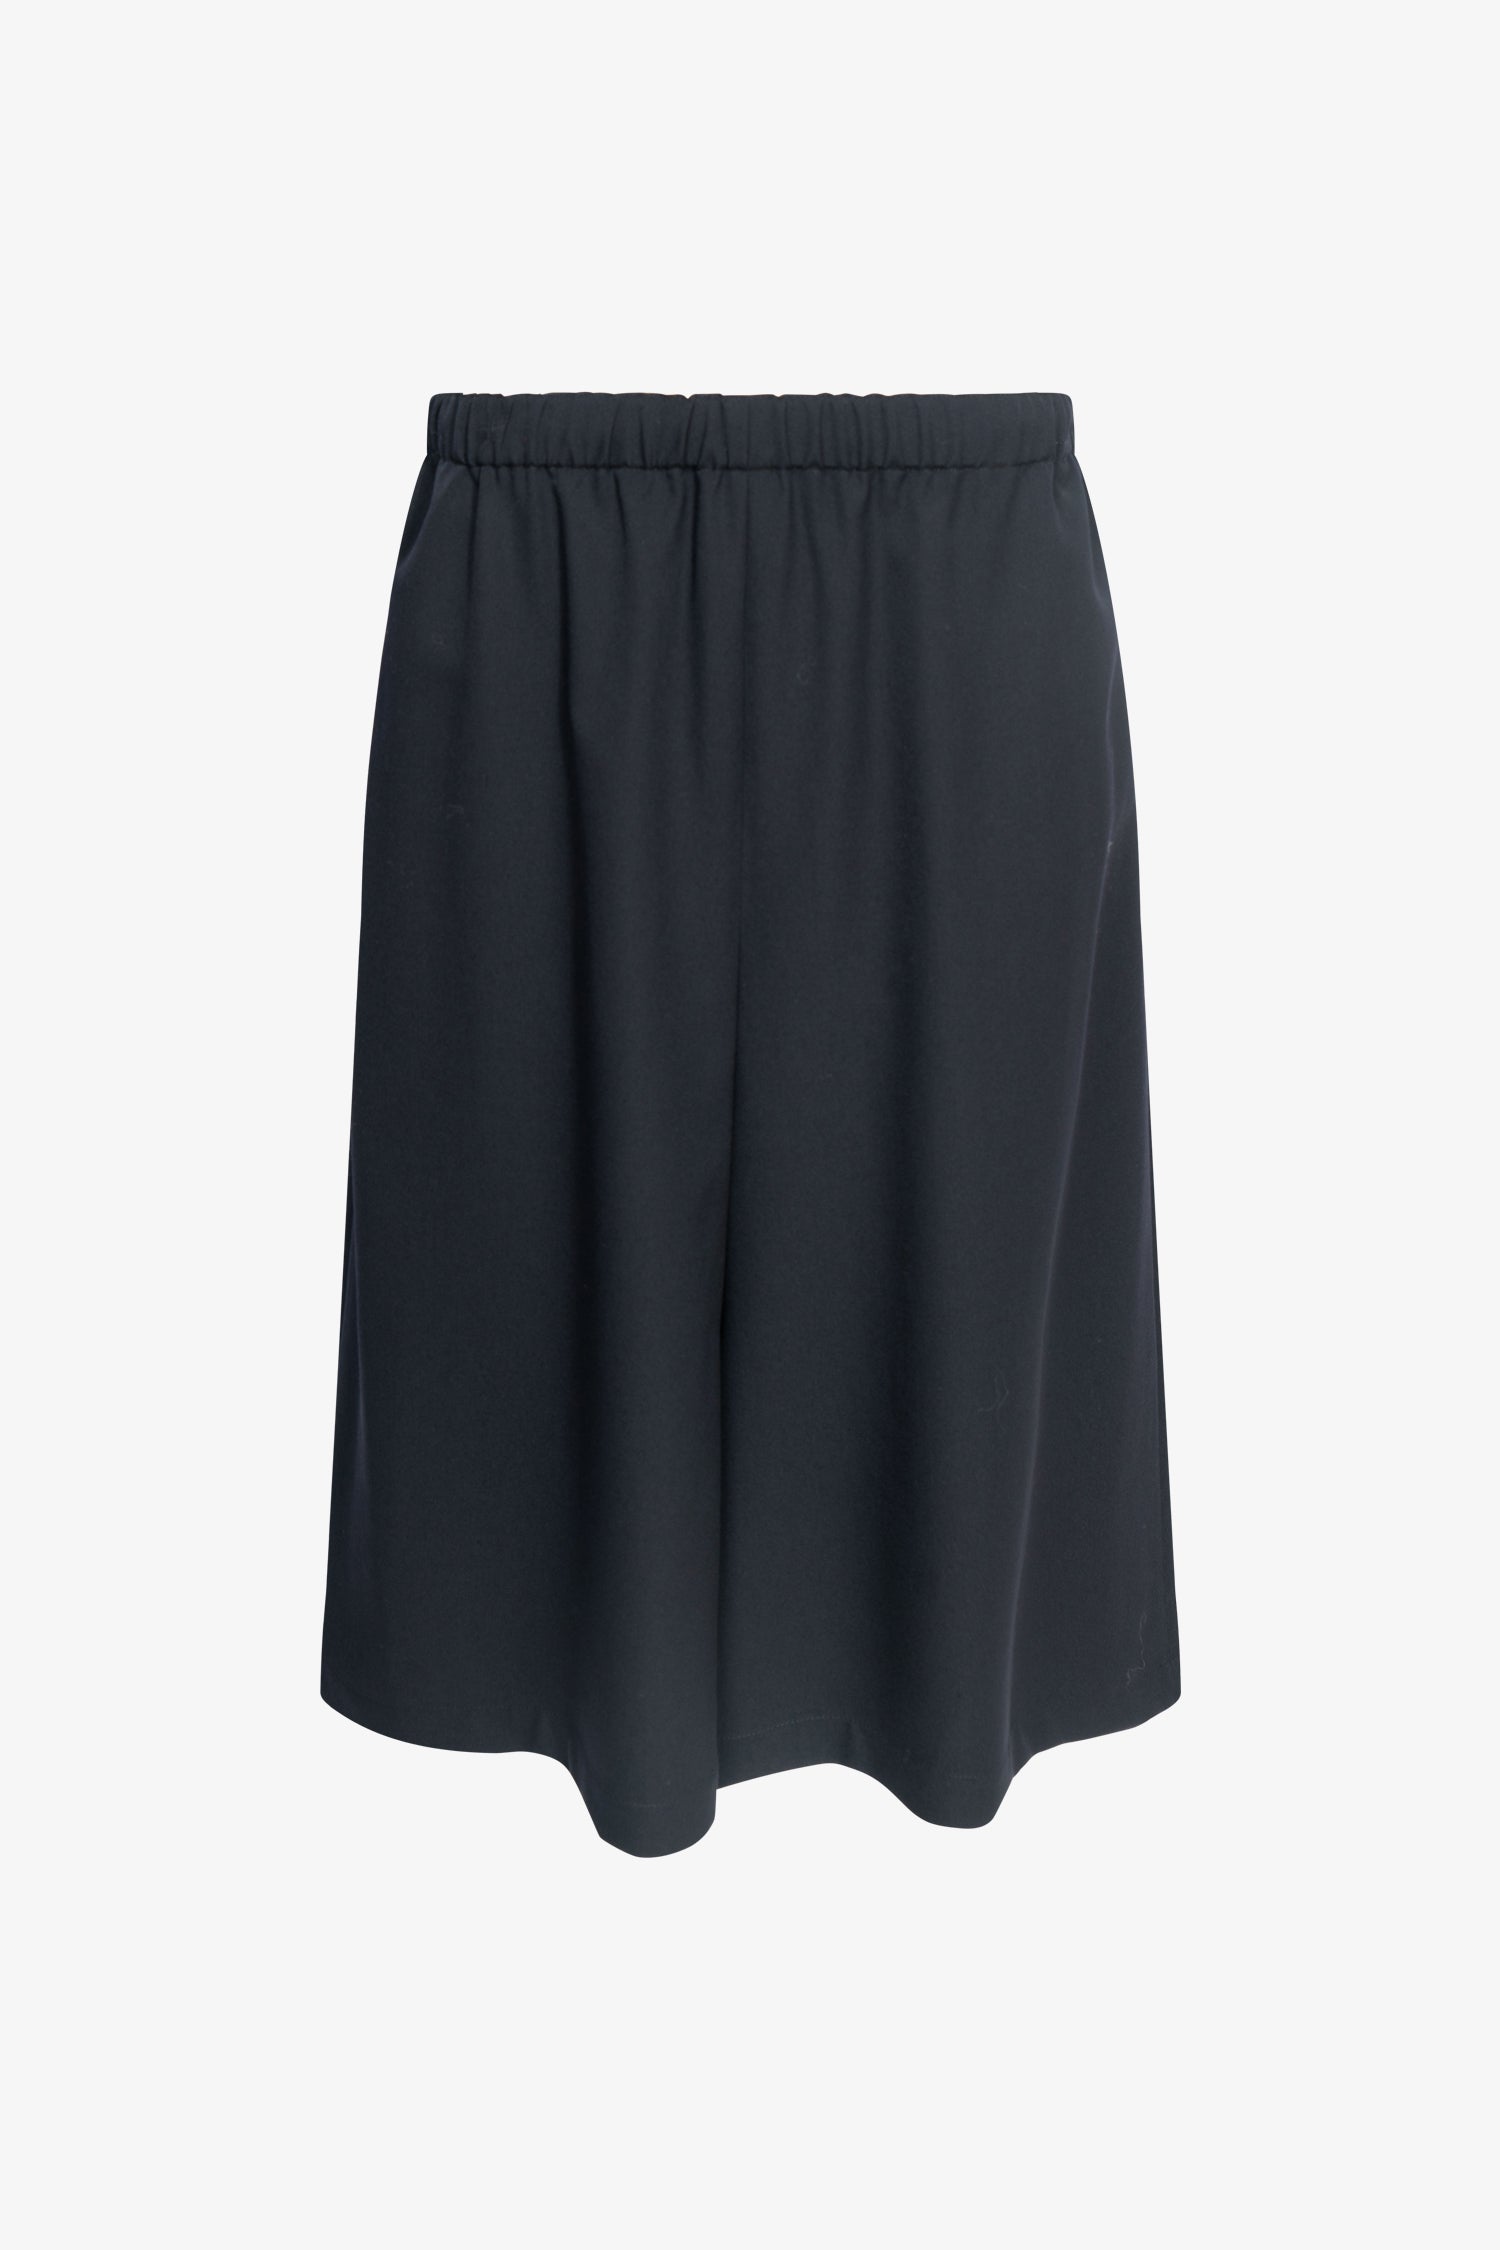 Selectshop FRAME - COMME DES GARÇONS GIRL Low-Crotch Shorts Bottoms Dubai